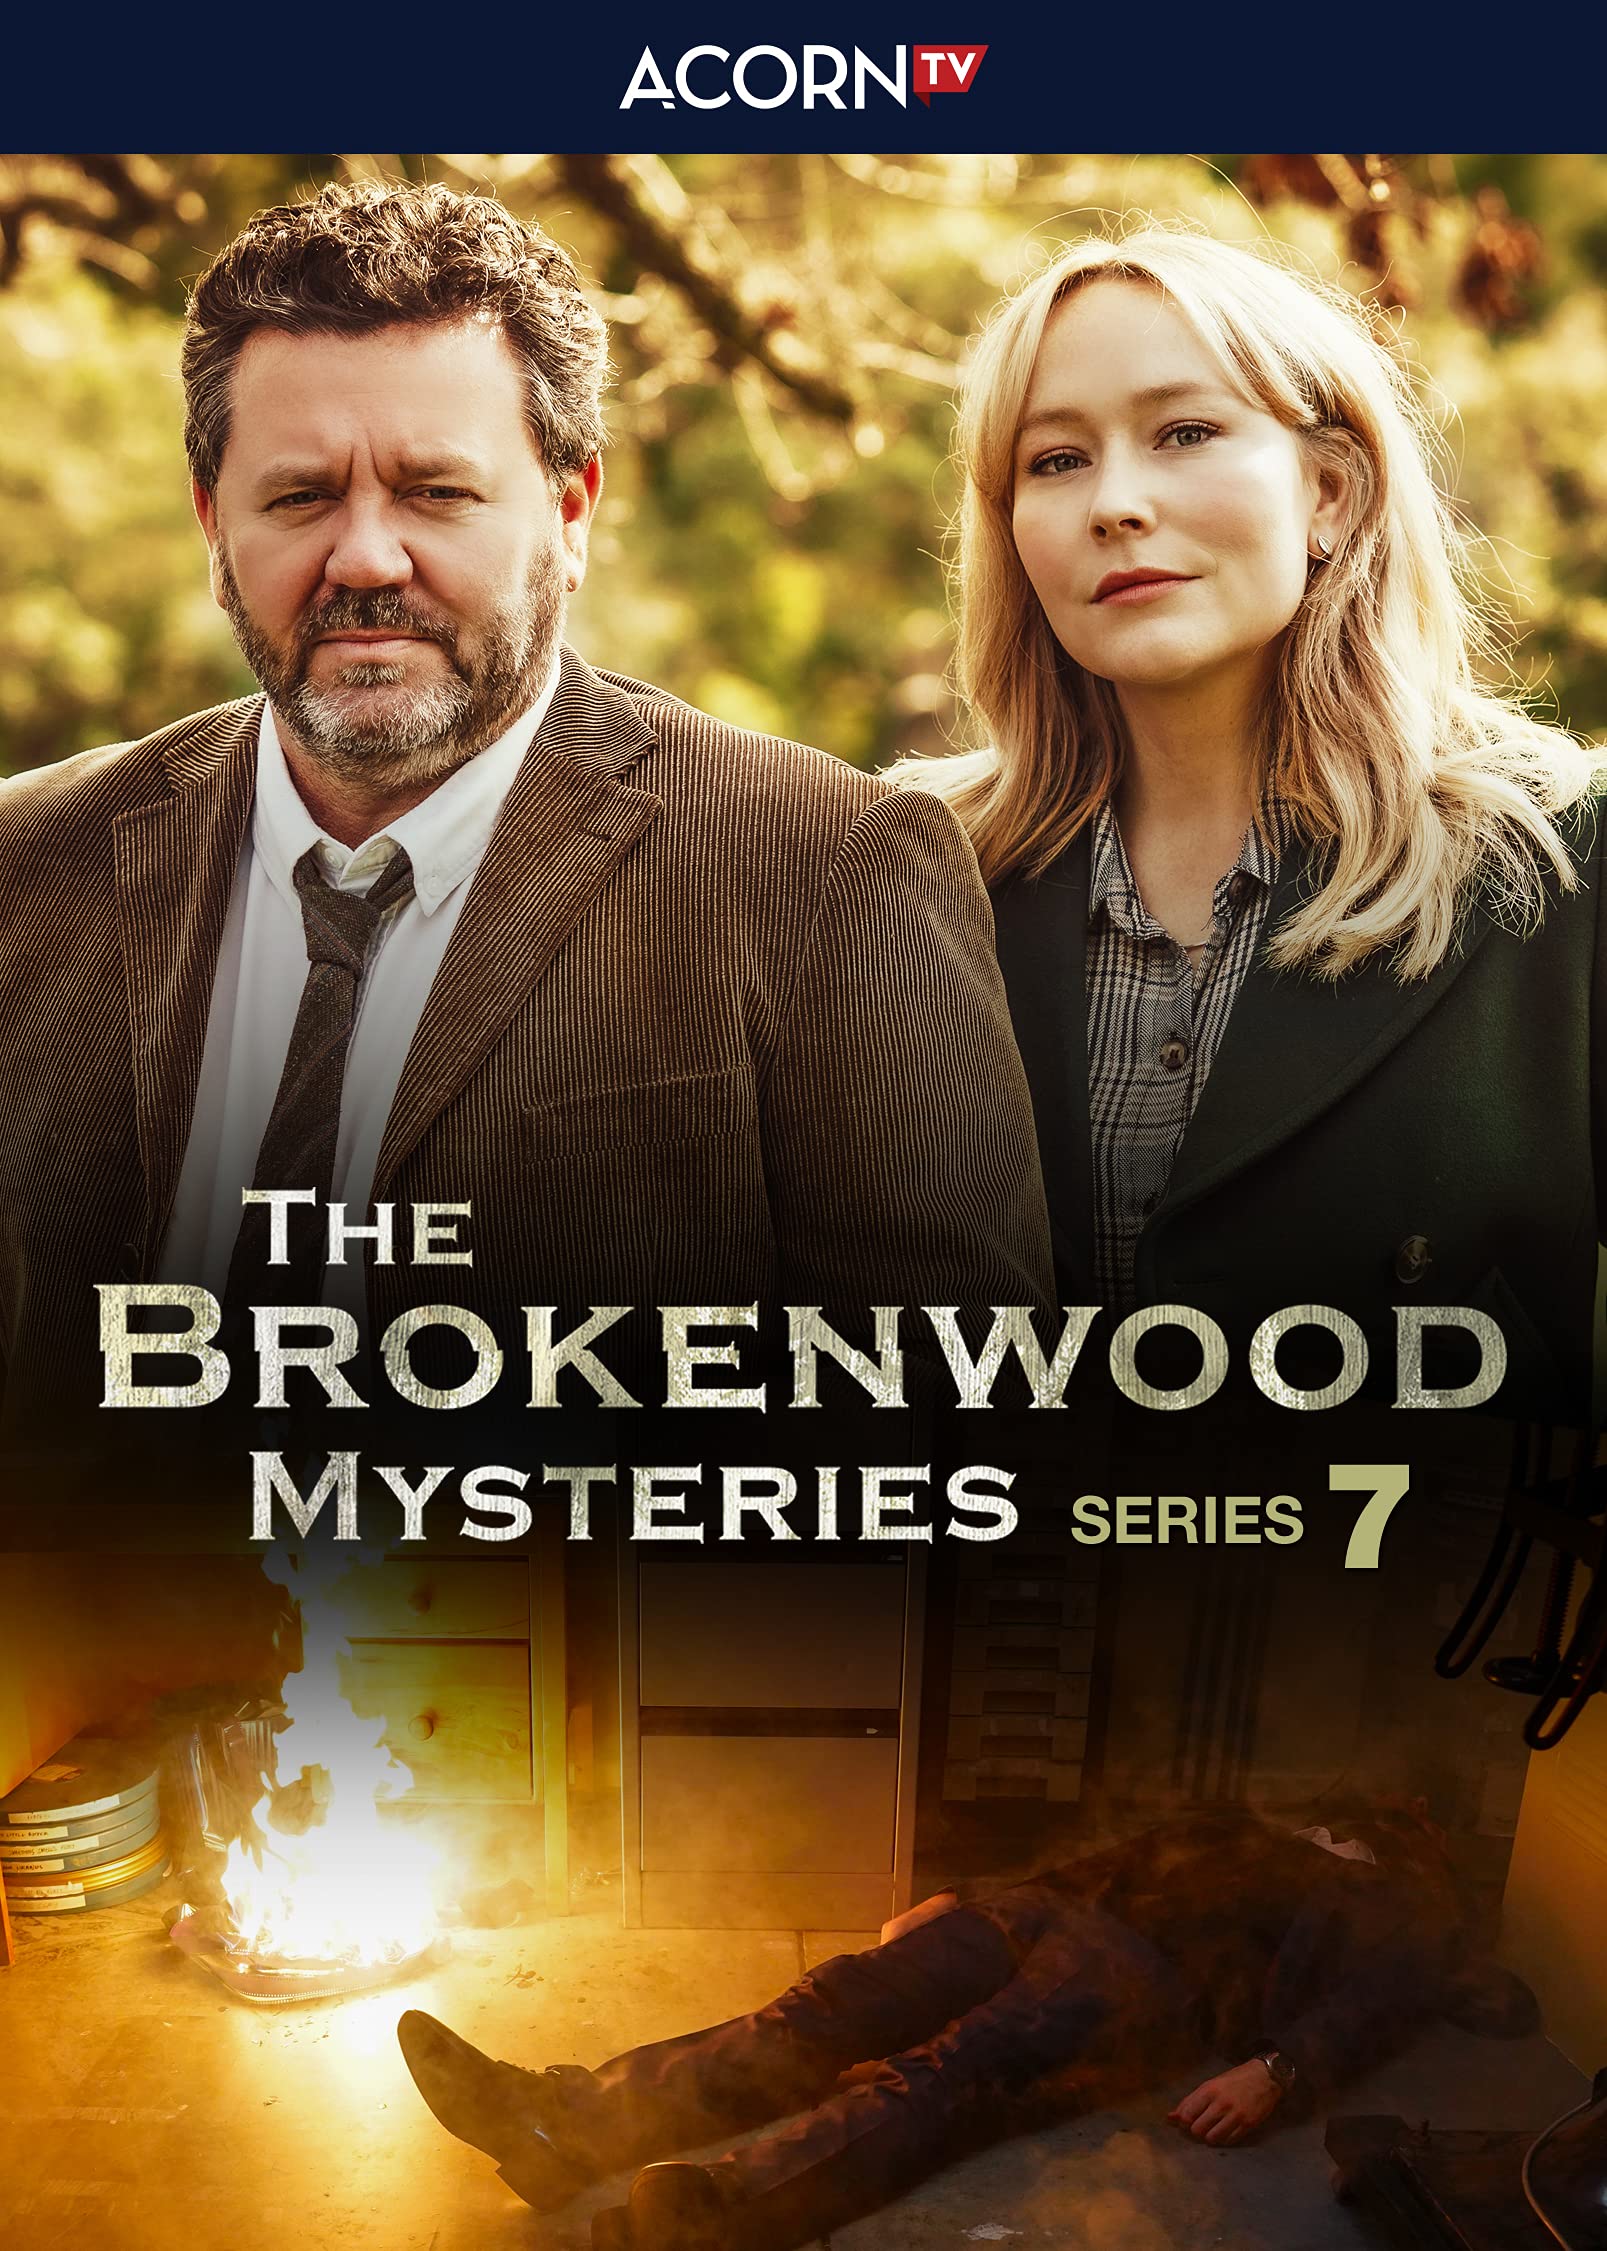 Brokenwood Mysteries Series 7 on MovieShack